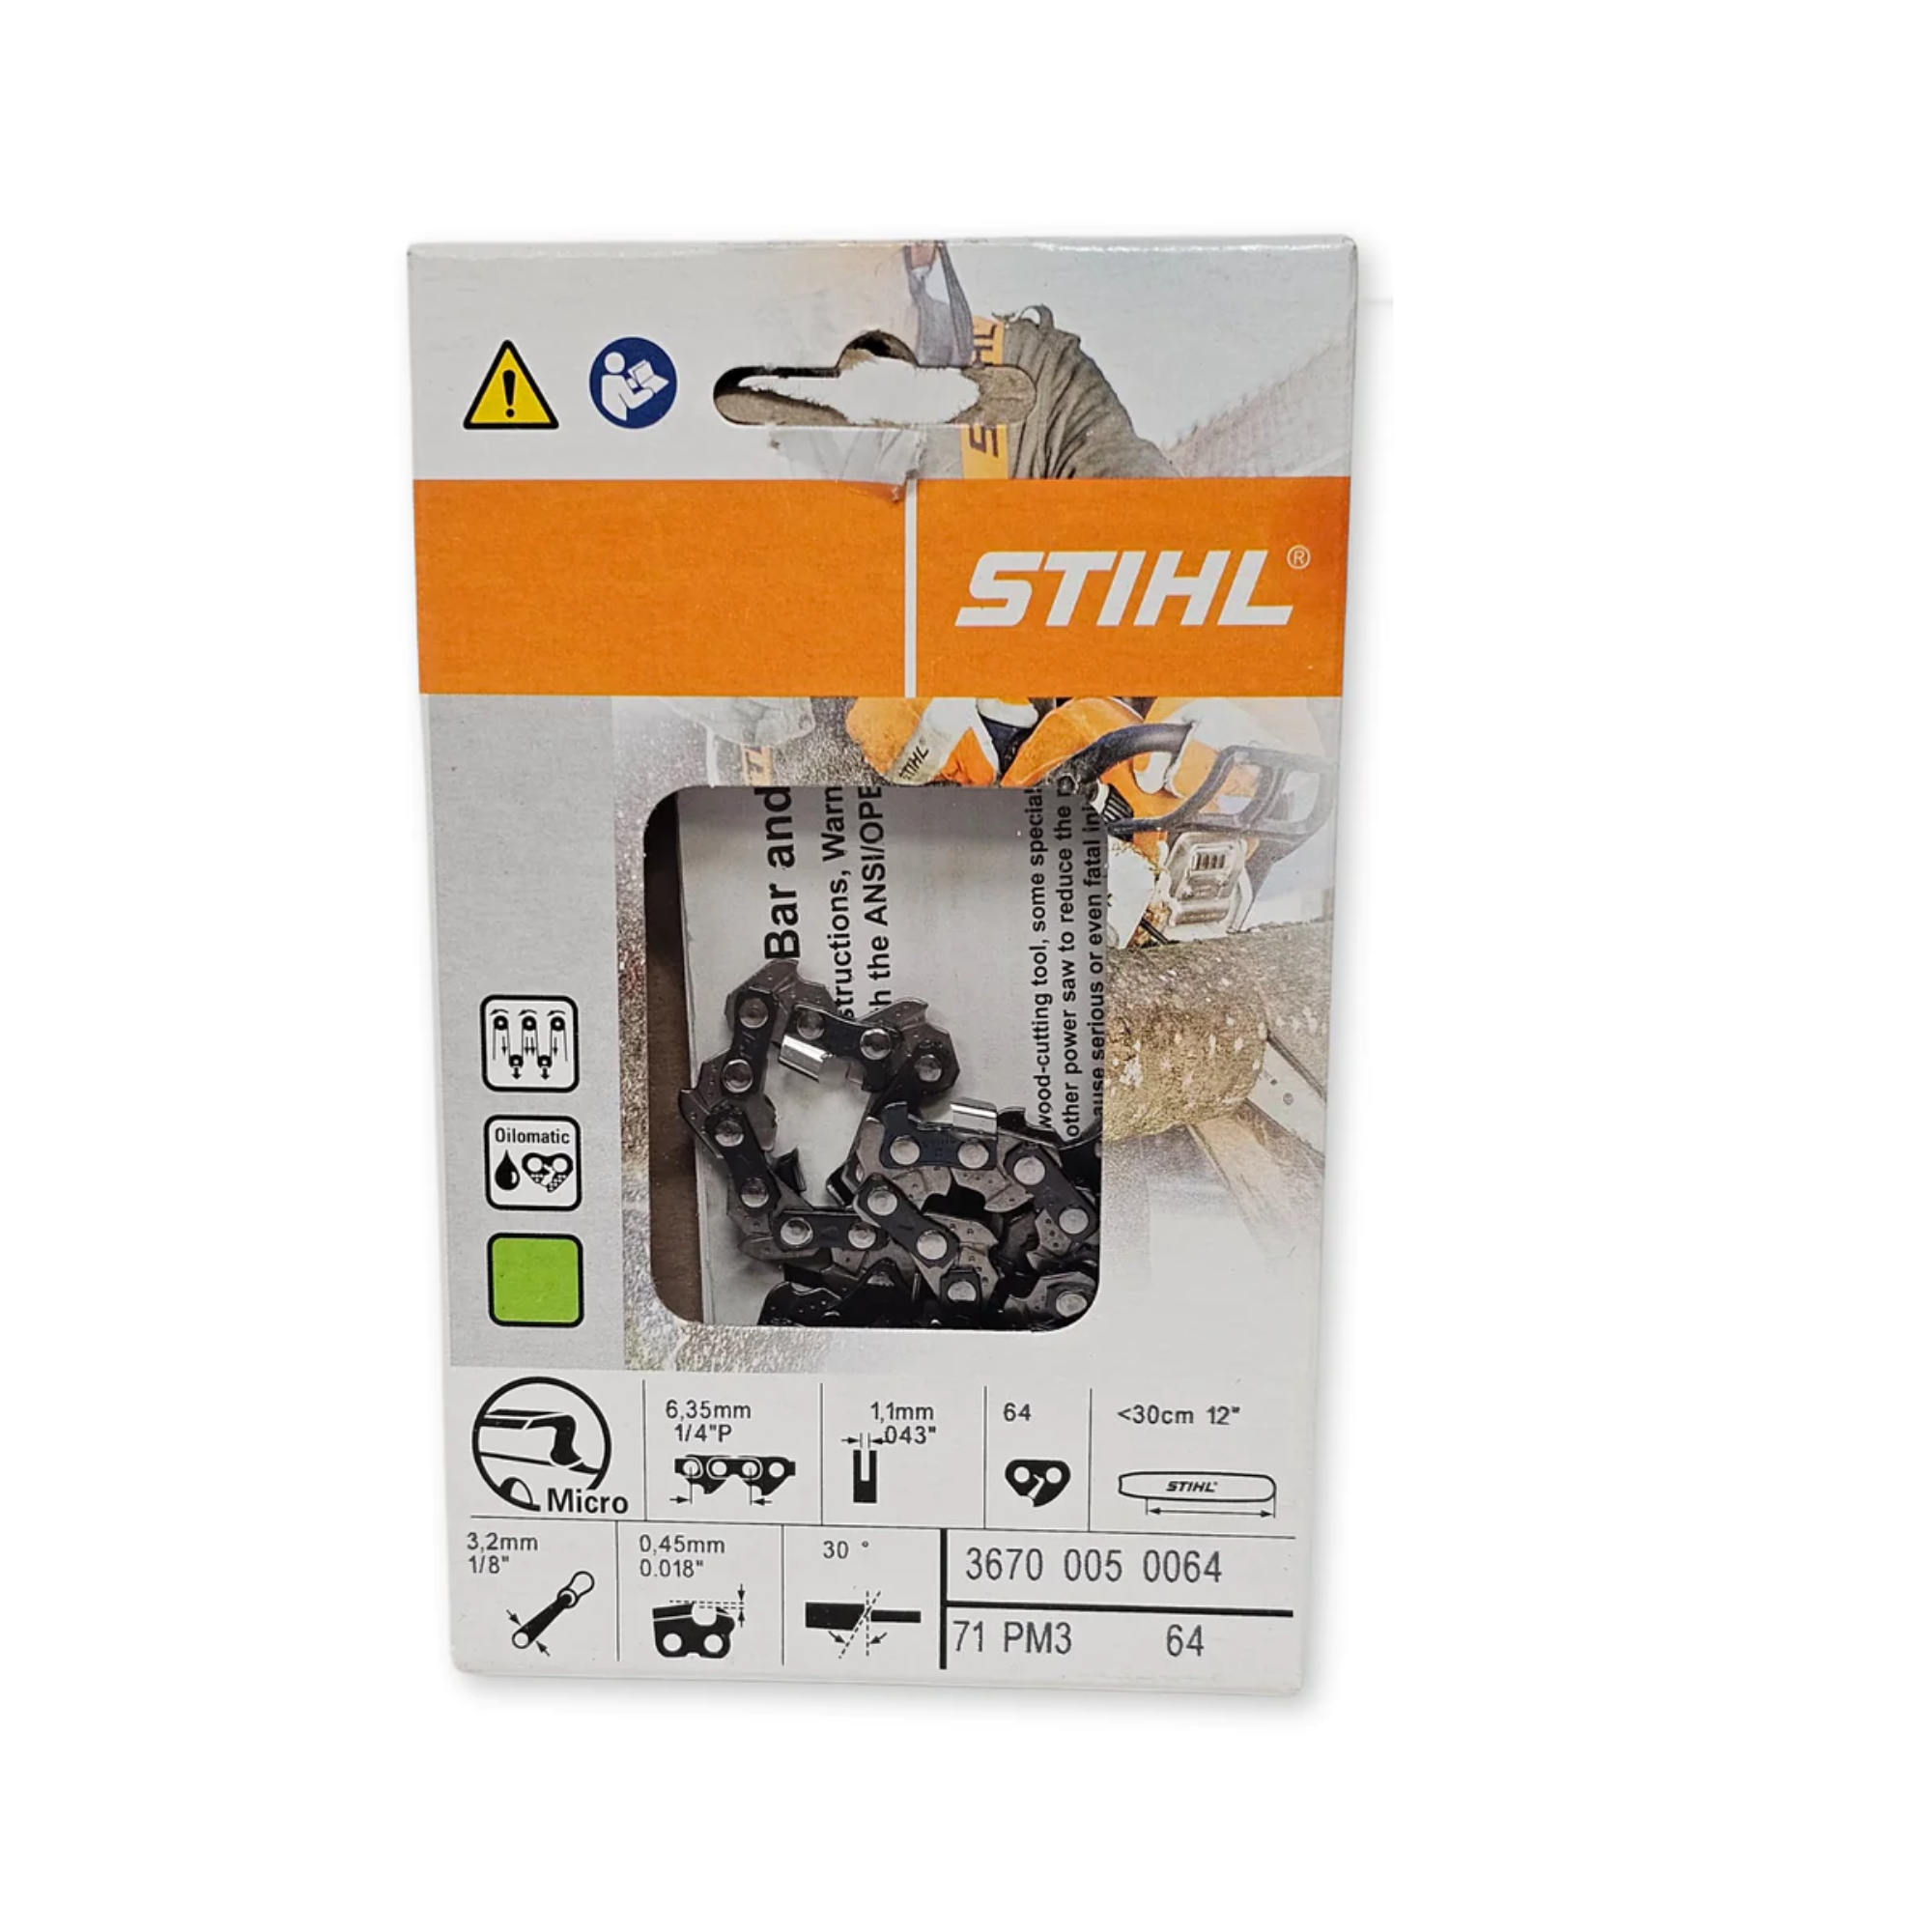 Stihl Oilomatic Picco Micro 3 | 71 PM3 64 | 12" | 64 Drive Links | Chainsaw Chain | 3670 005 0064